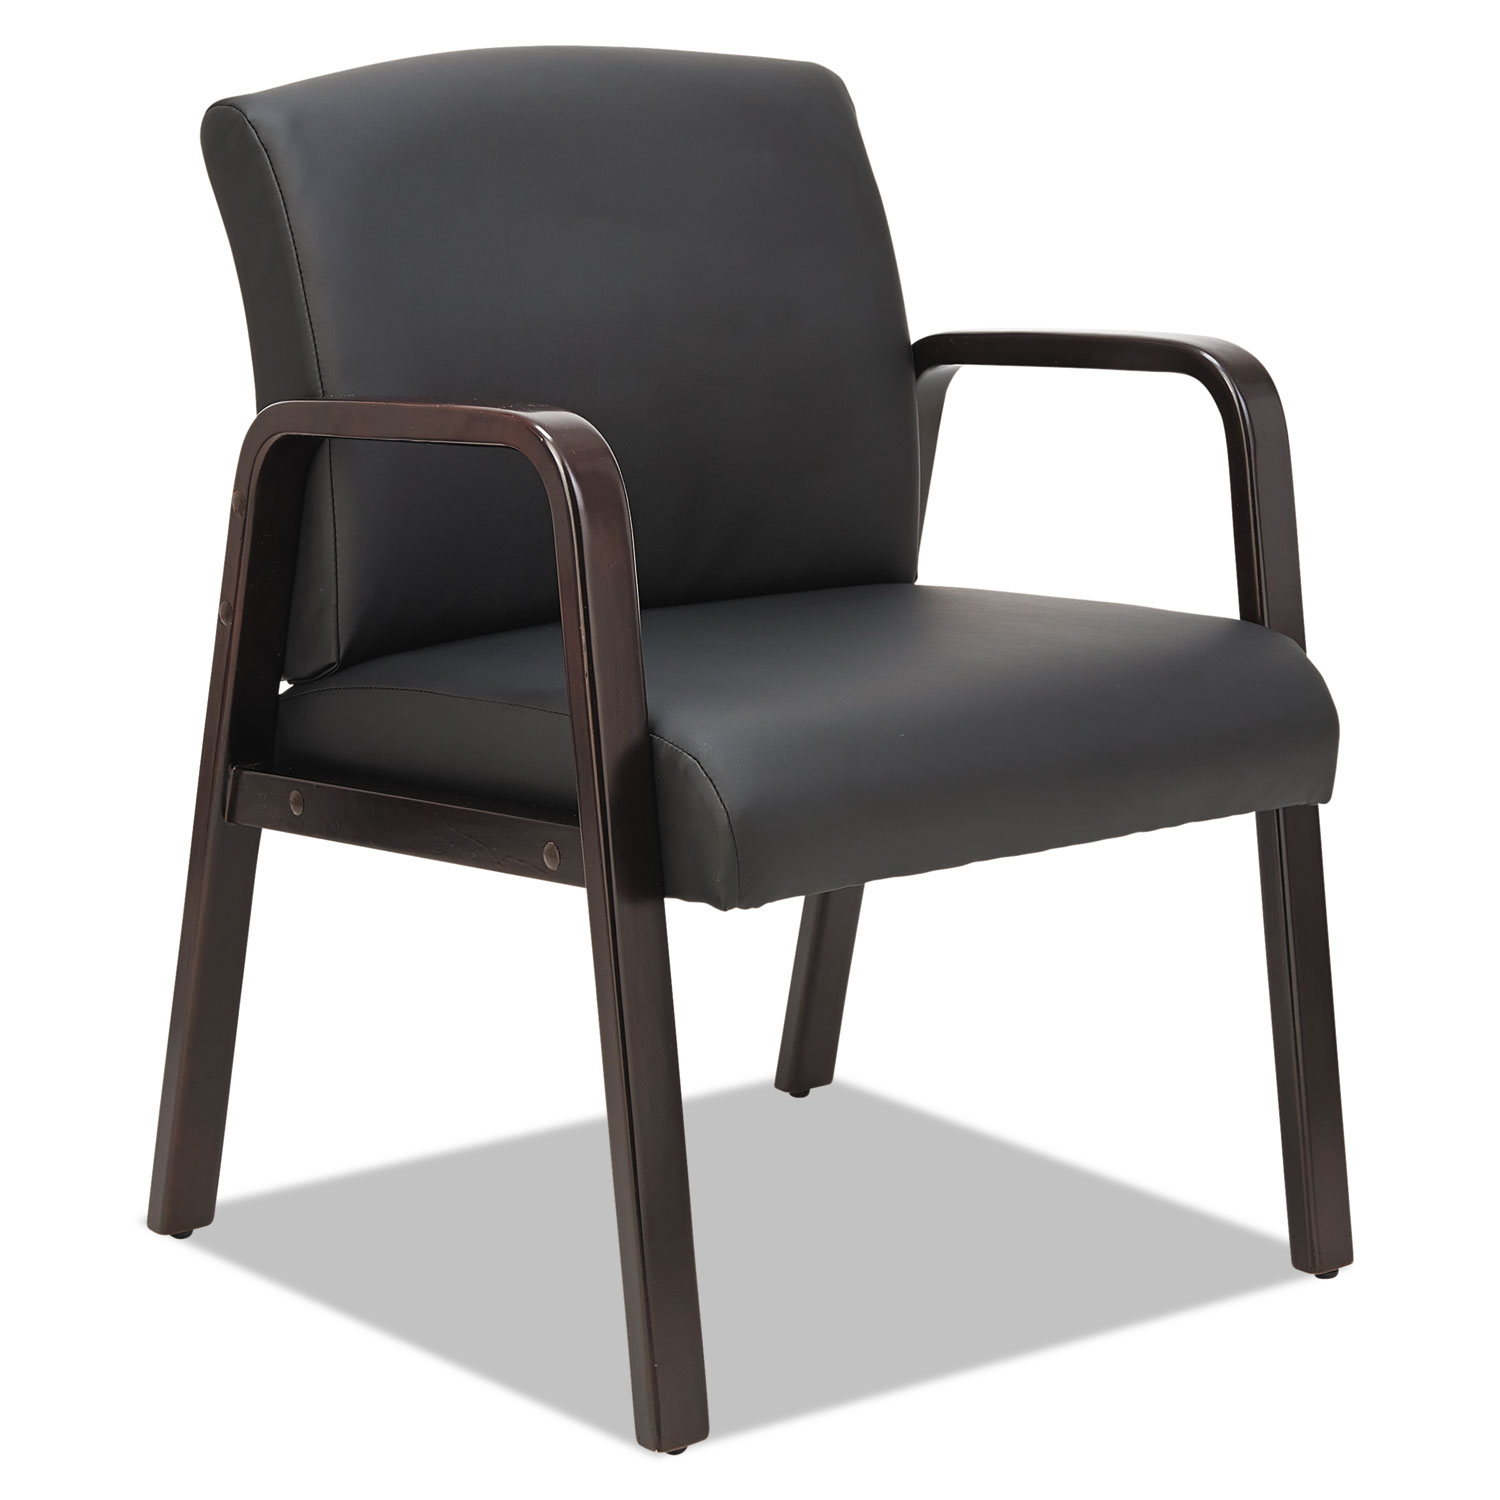  Alera ALERL4319E Alera Reception Lounge WL Series Guest Chair, 23.81'' x 25.37'' x 32.67'', Black Seat/Black Back, Espresso Base (ALERL4319E) 